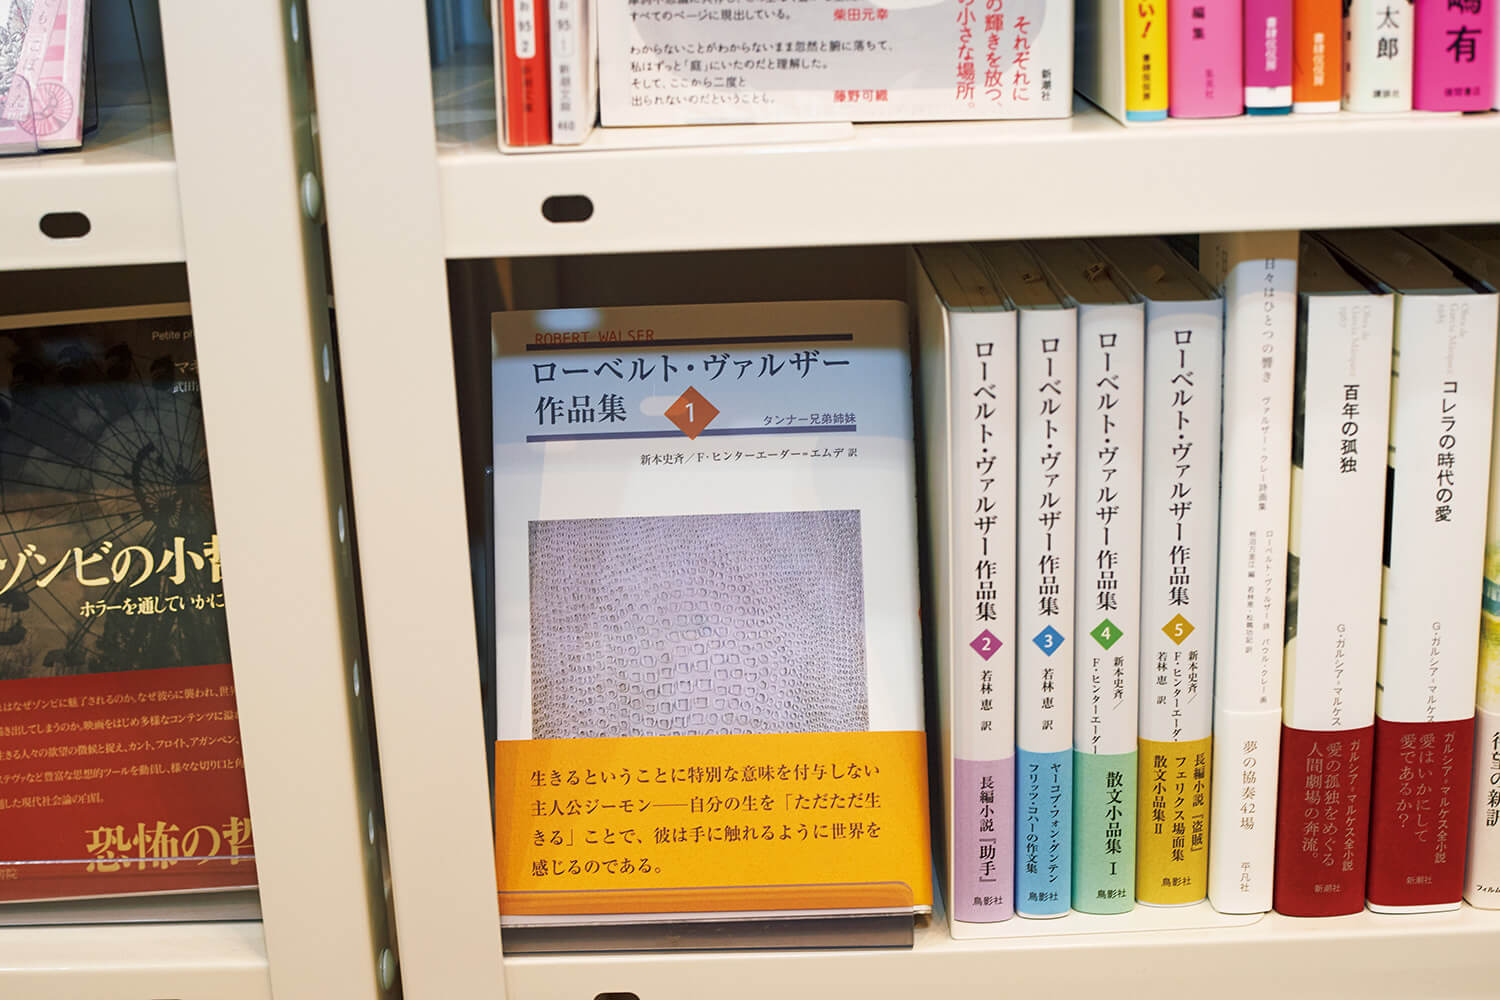 大阪 toi books 店内